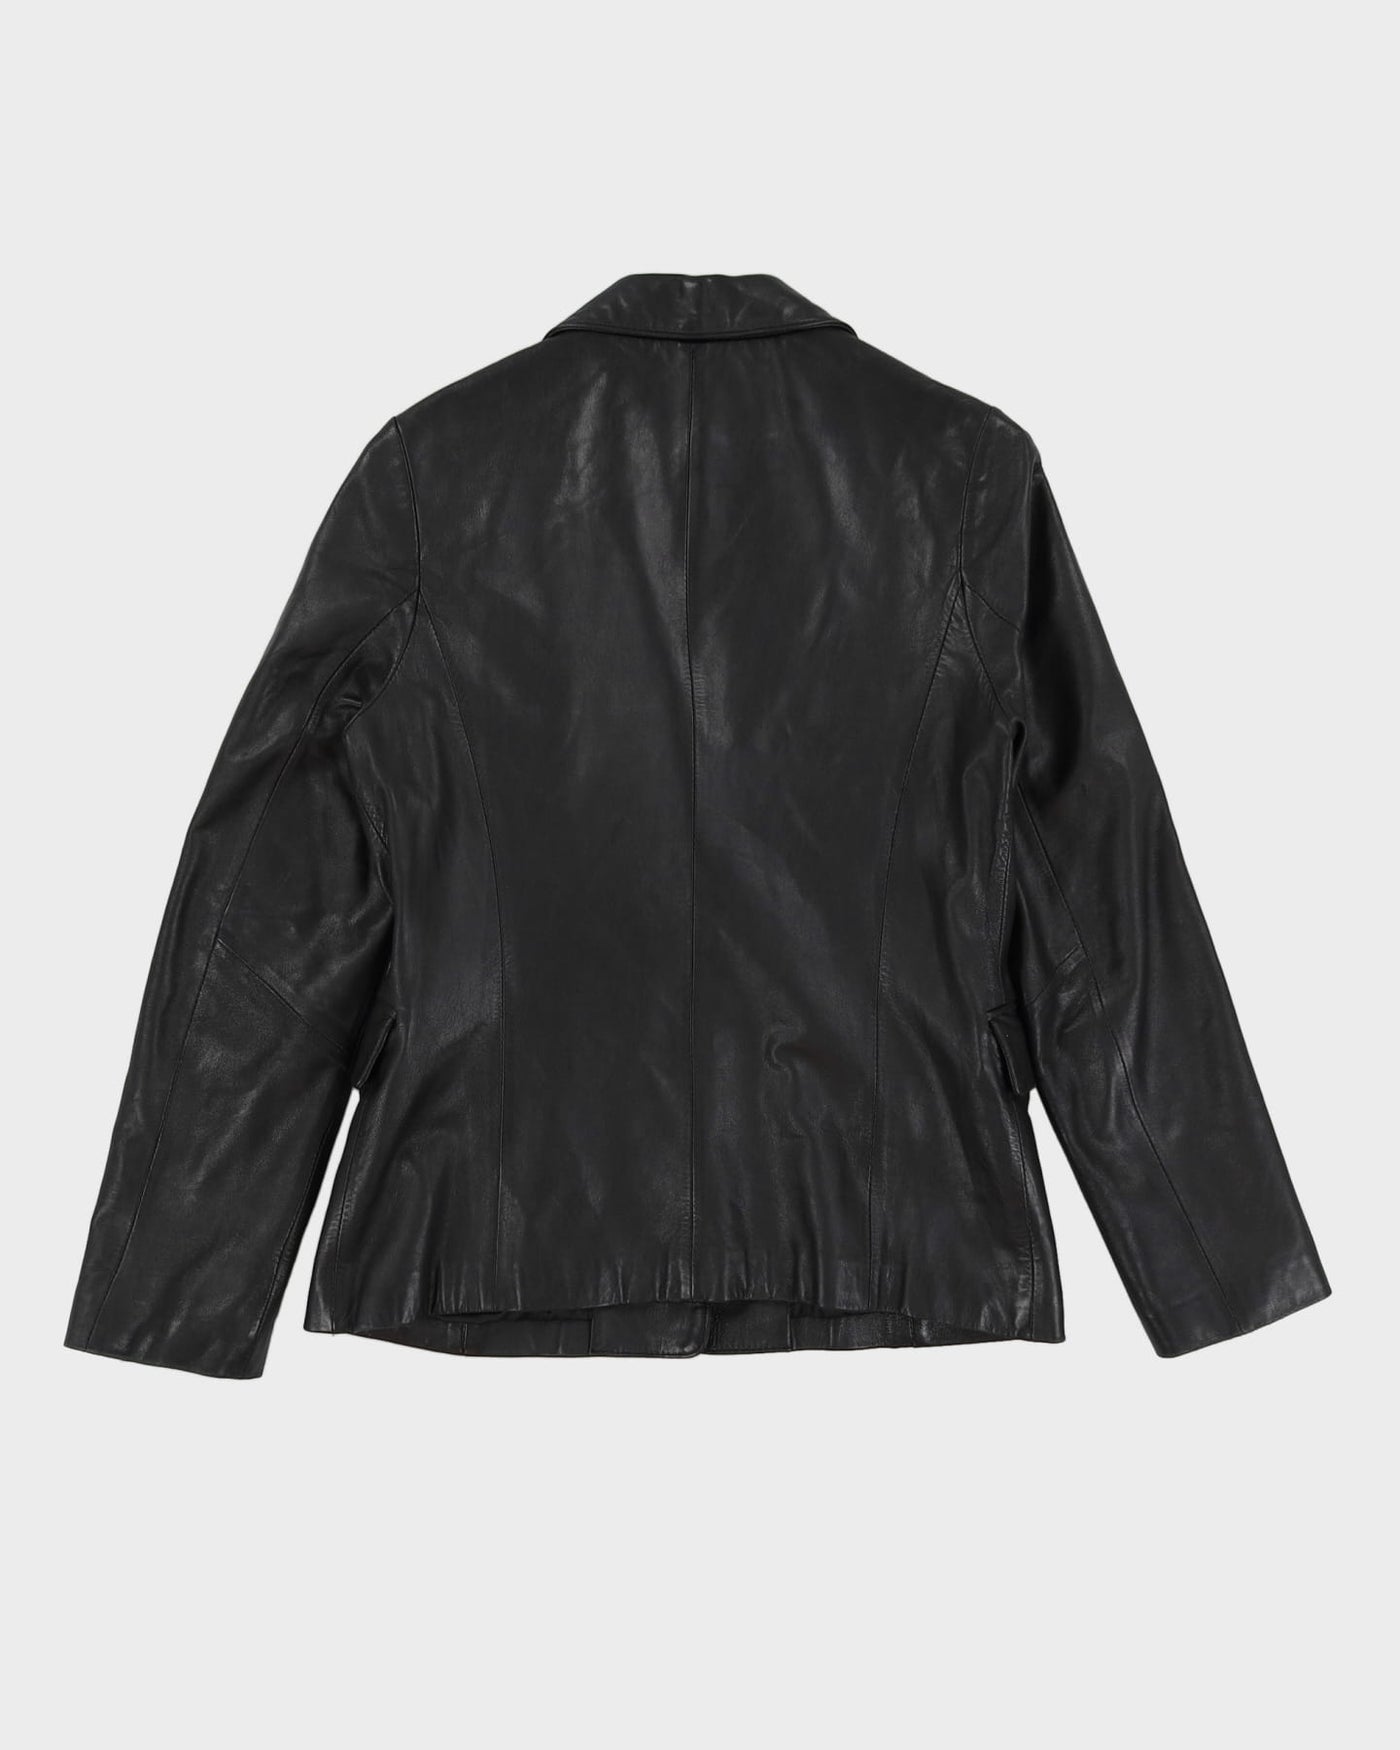 Pierre Cardin Black Blazer Blazer jacket - S